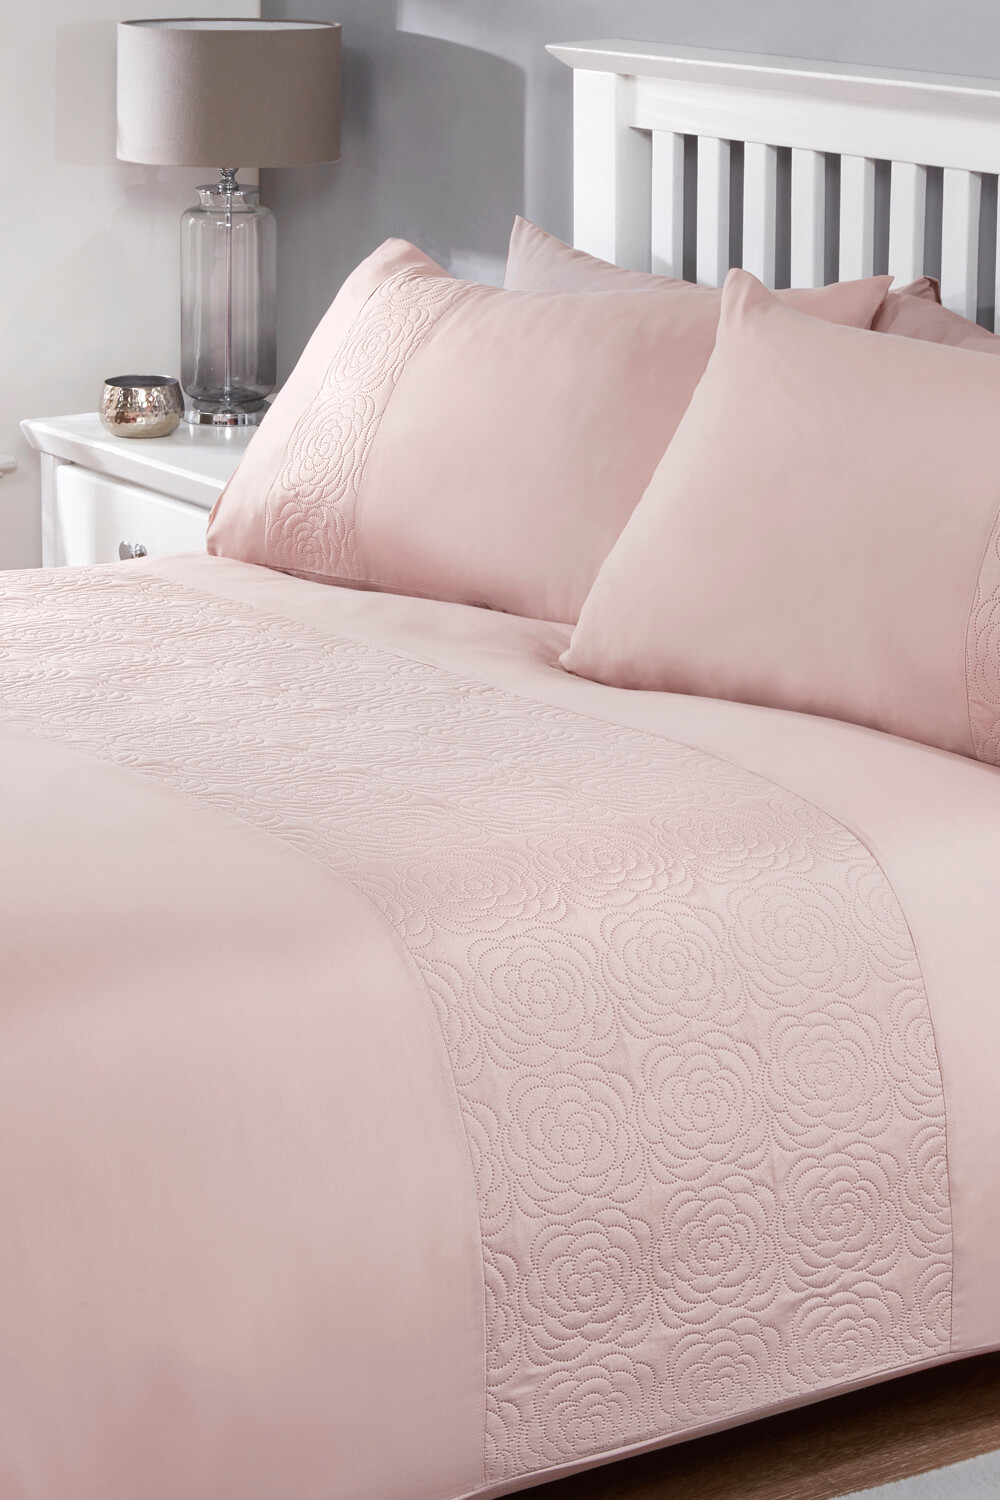 Rose Textured Duvet Cover Set In Pink, Plain Light Pink Duvet Cover